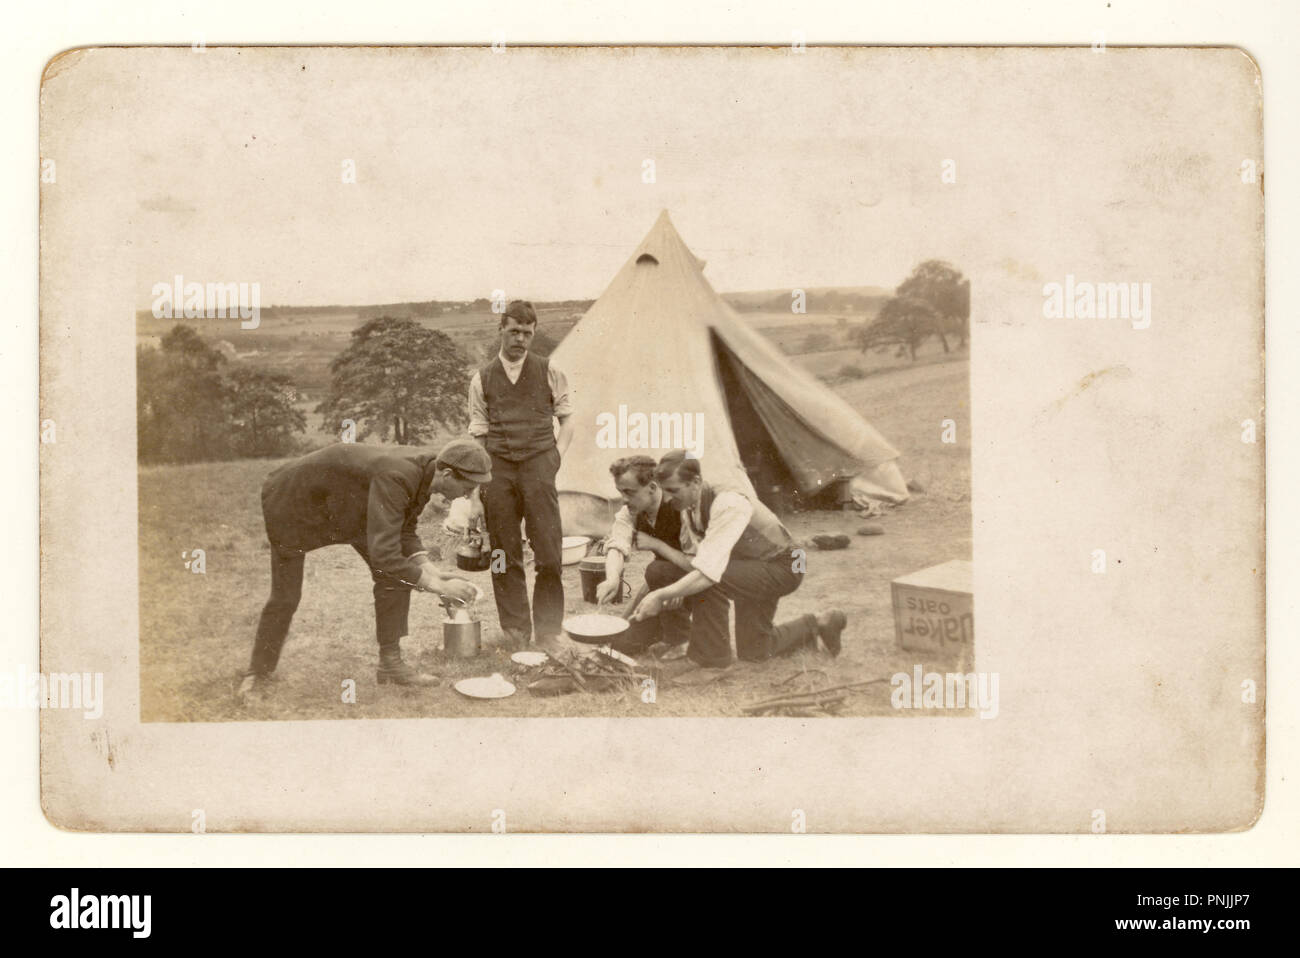 Carte postale édouardienne de jeunes hommes camping à la campagne, la cuisine ouverte sur une fireout tente de toile à l'extérieur, vers 1904, Royaume-Uni Banque D'Images